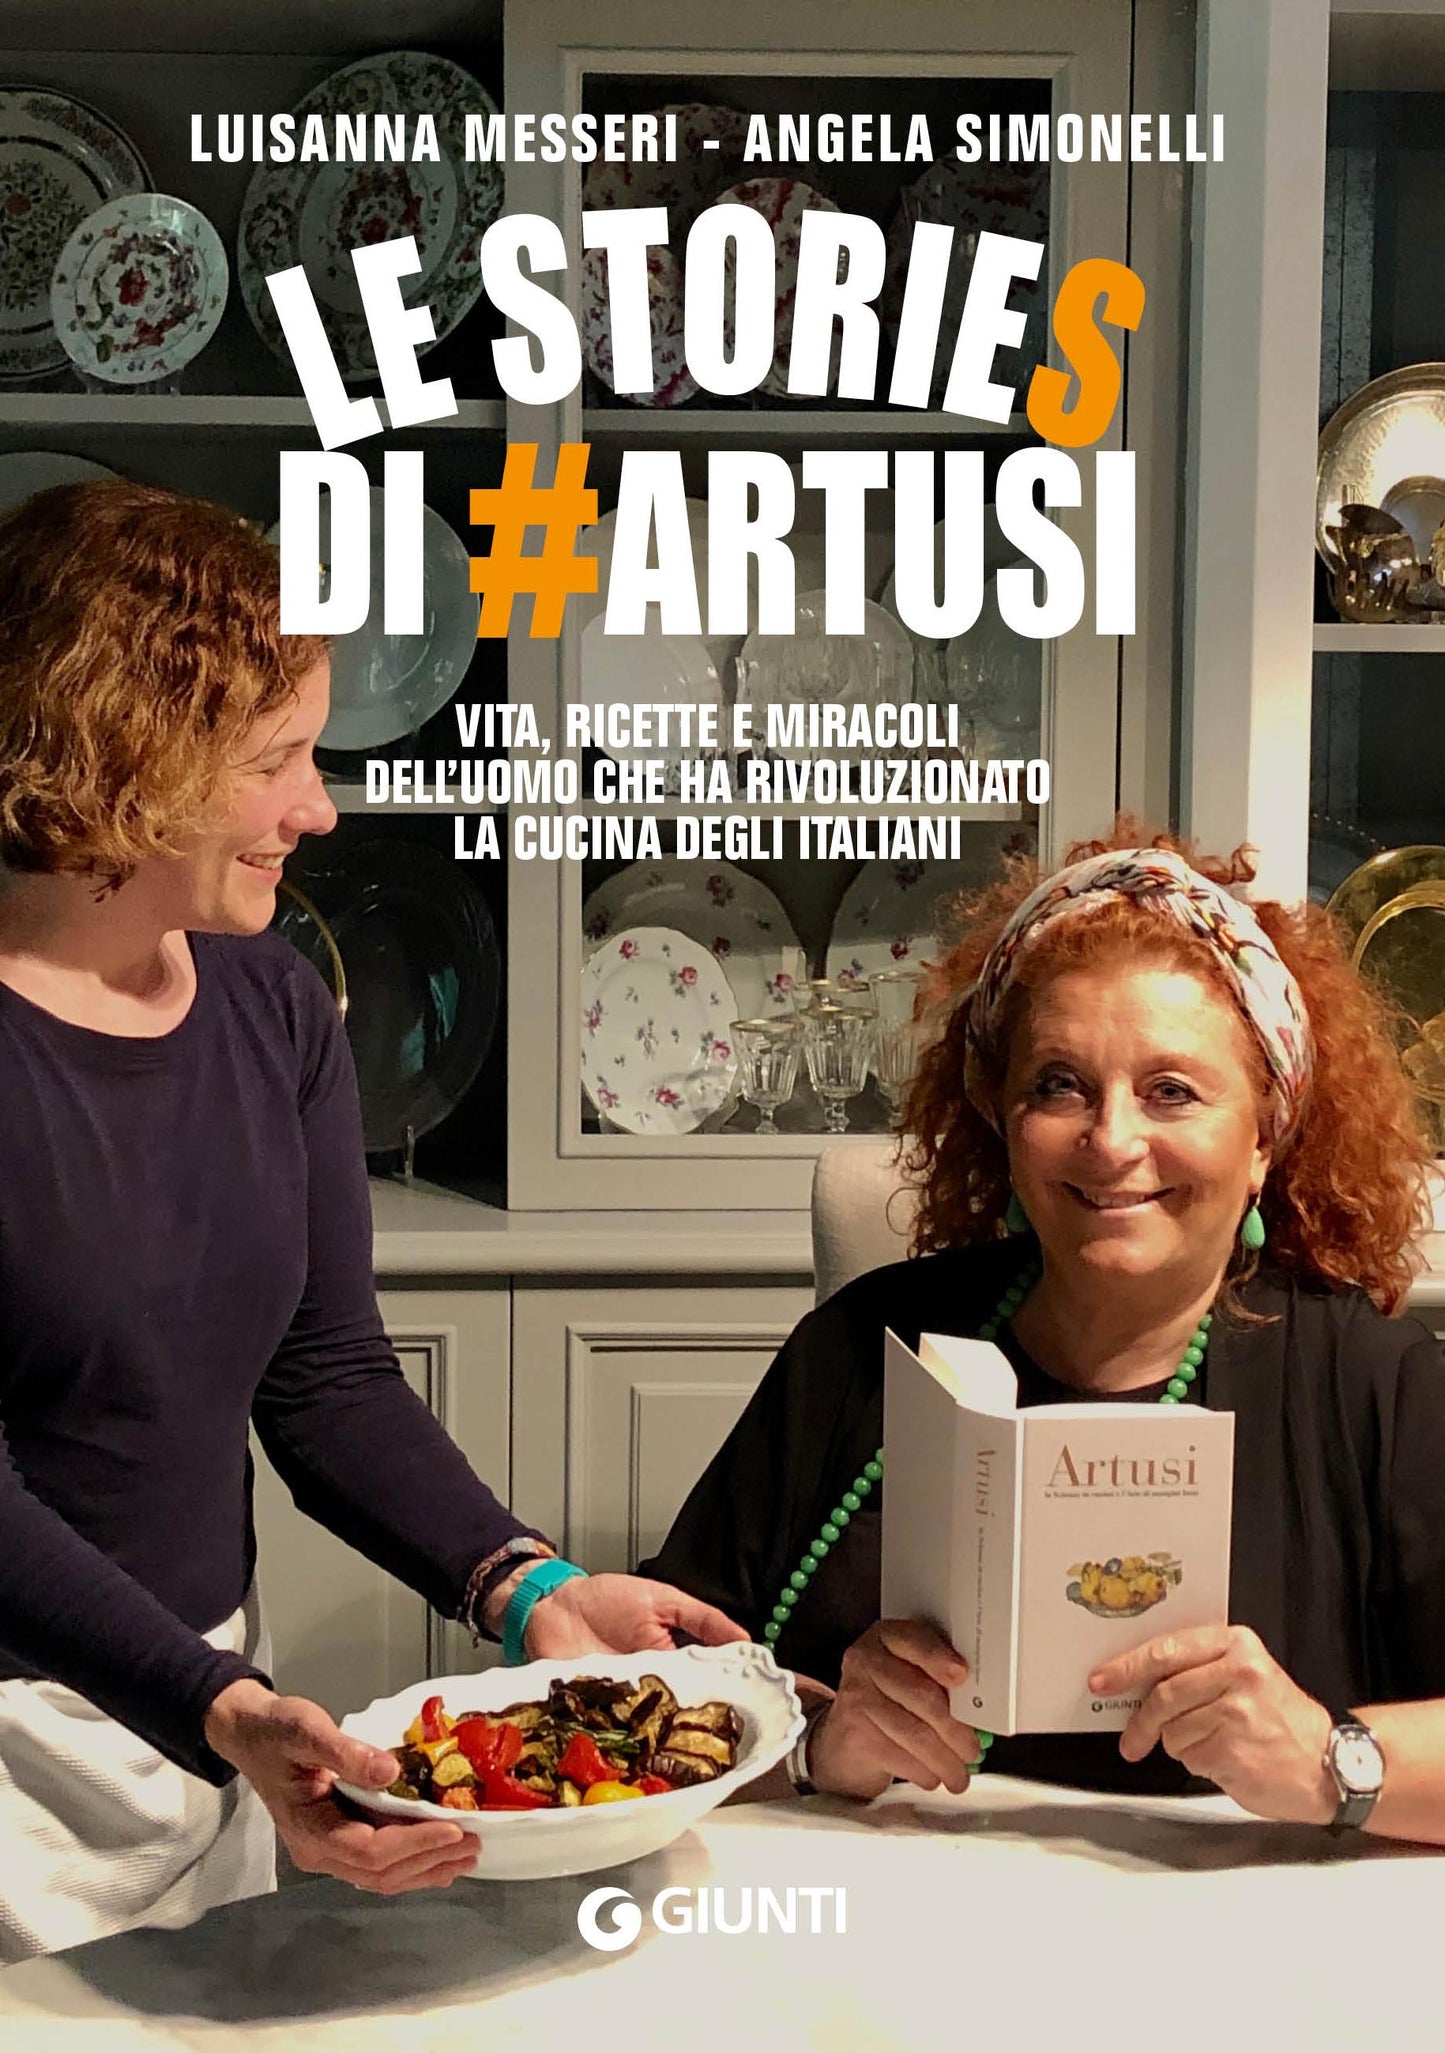 Le stories di #Artusi. Vita, ricette e miracoli dell'uomo che ha rivoluzionato la cucina degli italiani